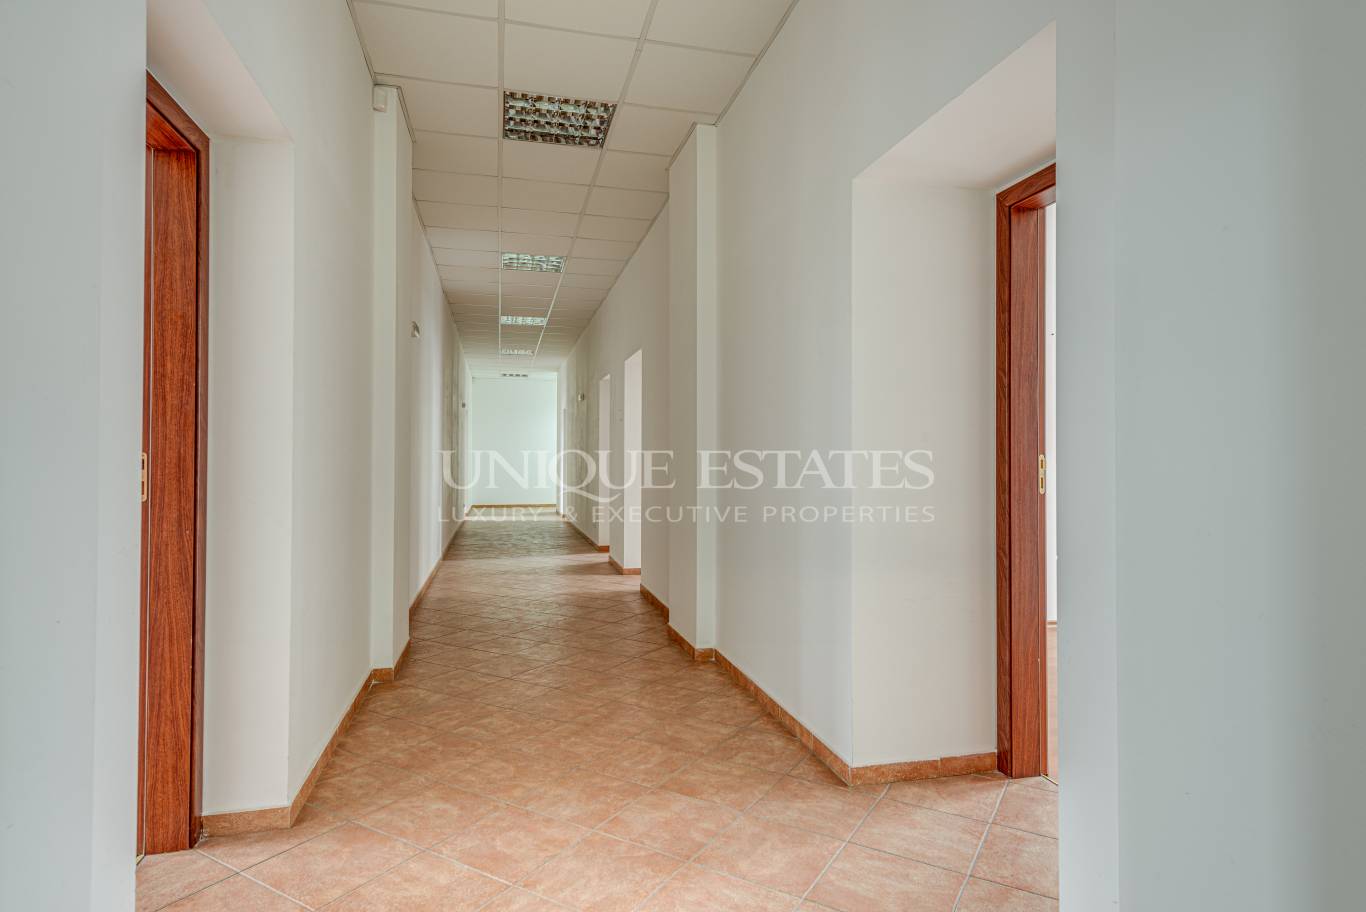 Офис под наем в София, Център - код на имота: K4831 - image 7